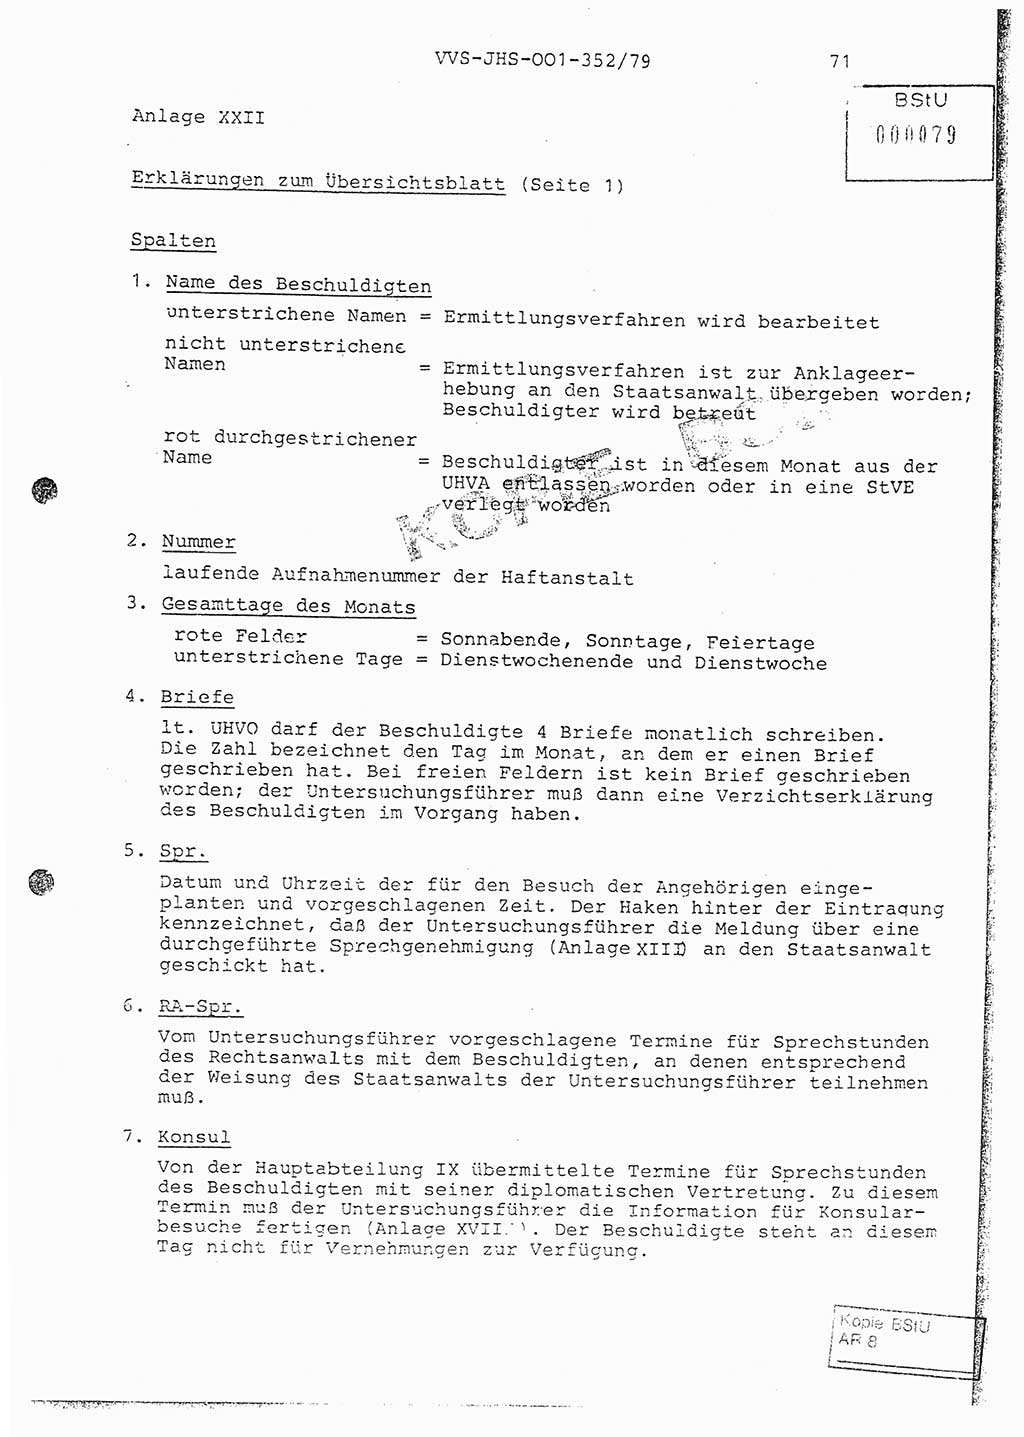 Diplomarbeit Hauptmann Peter Wittum (BV Bln. Abt. HA Ⅸ), Ministerium für Staatssicherheit (MfS) [Deutsche Demokratische Republik (DDR)], Juristische Hochschule (JHS), Vertrauliche Verschlußsache (VVS) o001-352/79, Potsdam 1979, Seite 71 (Dipl.-Arb. MfS DDR JHS VVS o001-352/79 1979, S. 71)